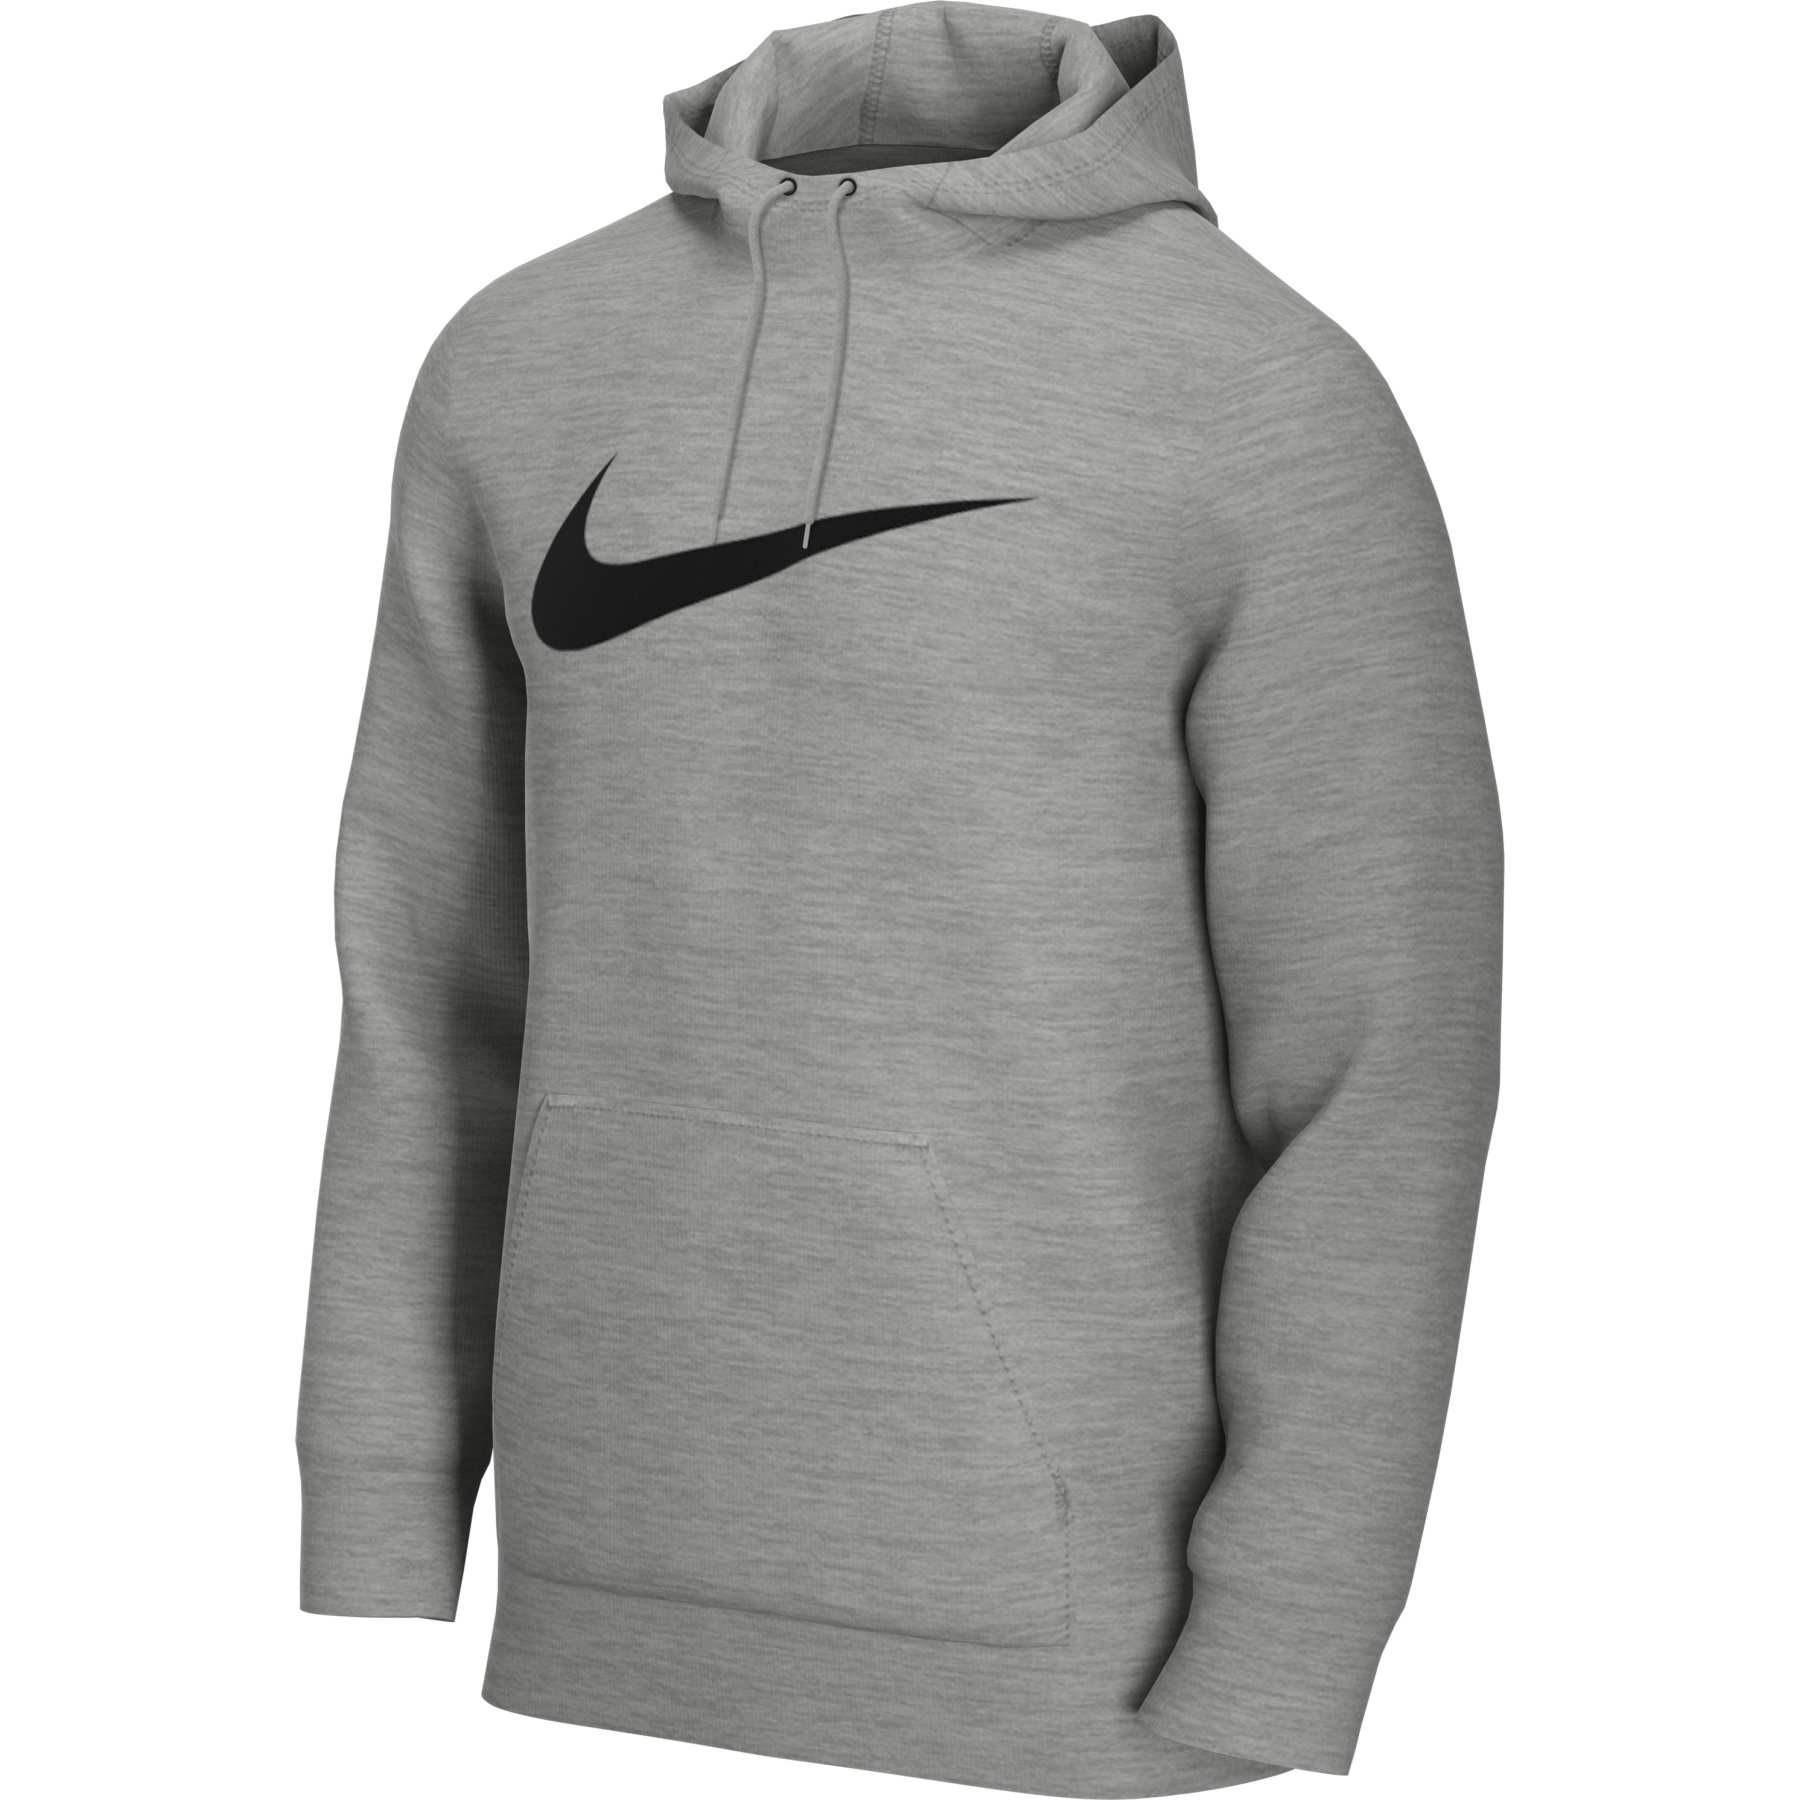 Bild von Nike Dri-FIT Training Pullover für Herren - dark grey heather/black CZ2425-063